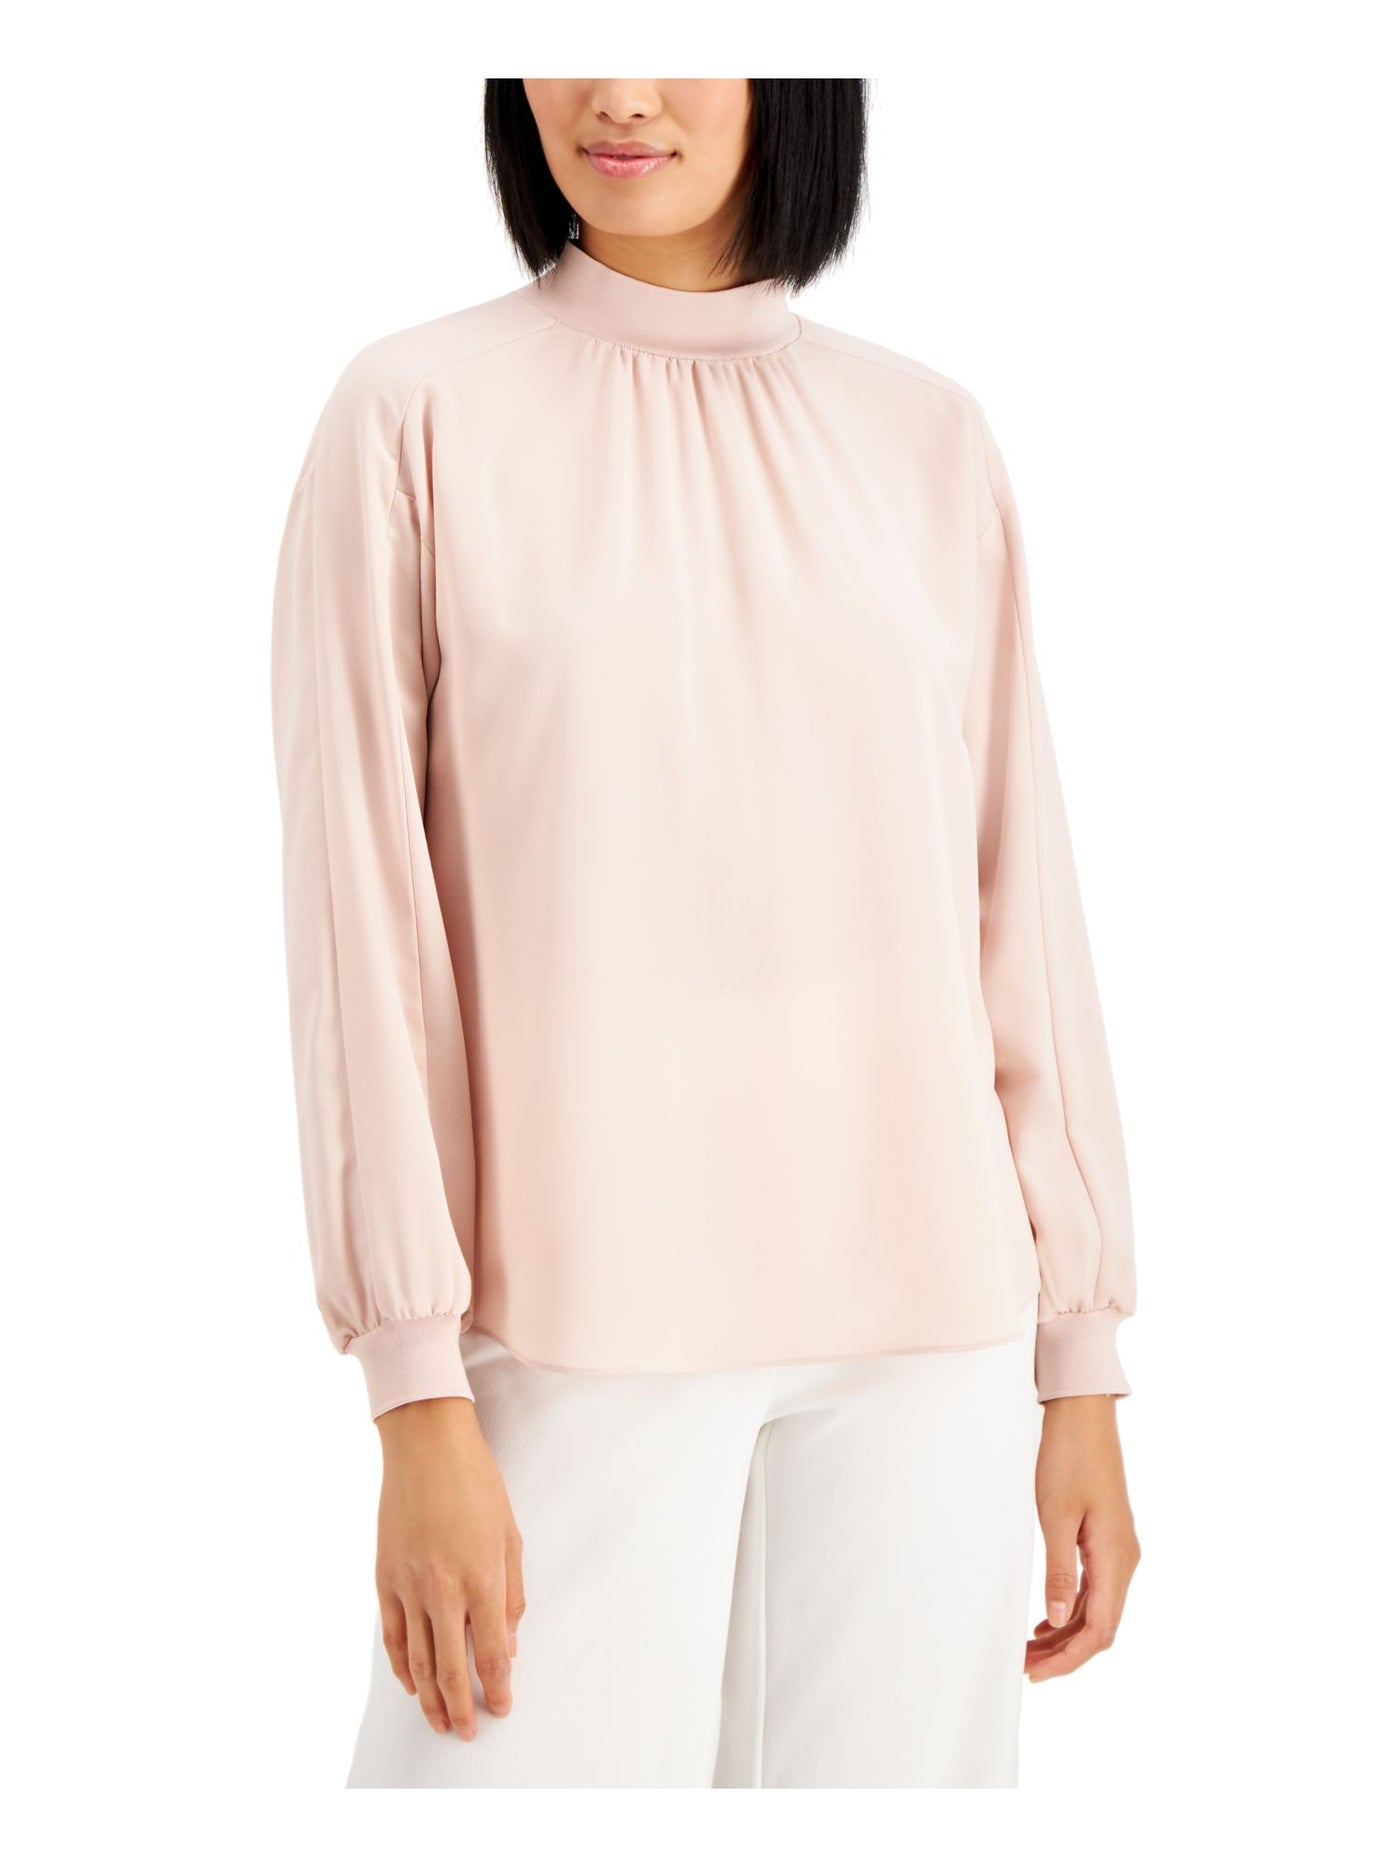 ALFANI Womens Light Pink Zippered Long Sleeve Top XXL